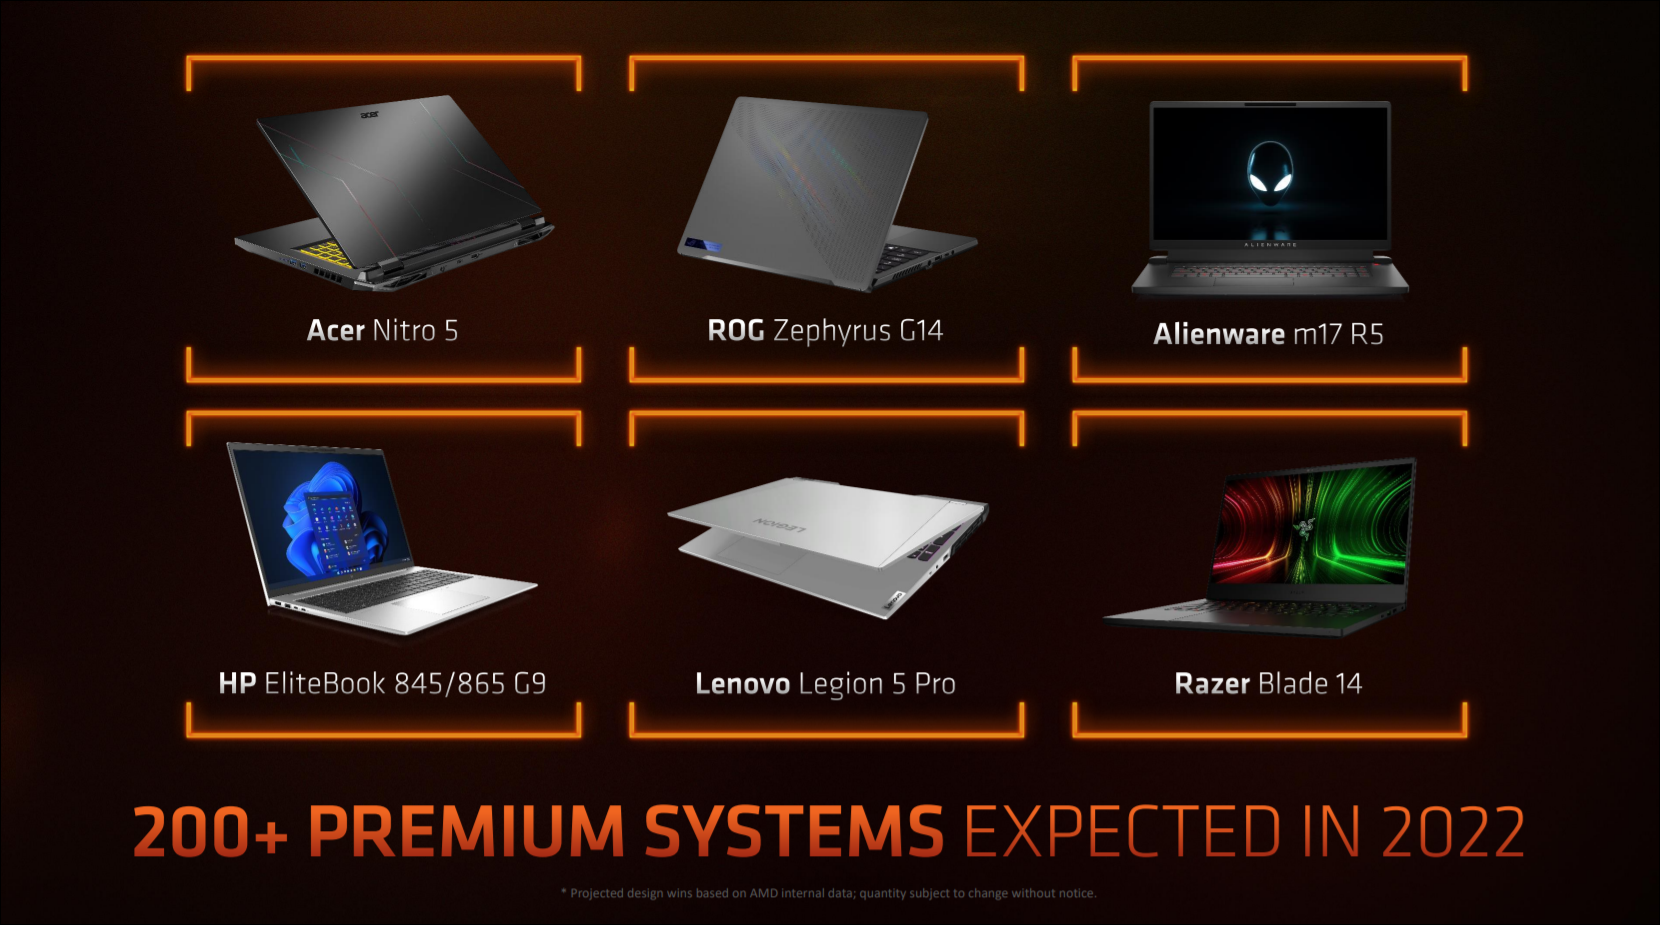 Una diapositiva que muestra seis portátiles que se espera que se lancen con procesadores Ryzen 6000.